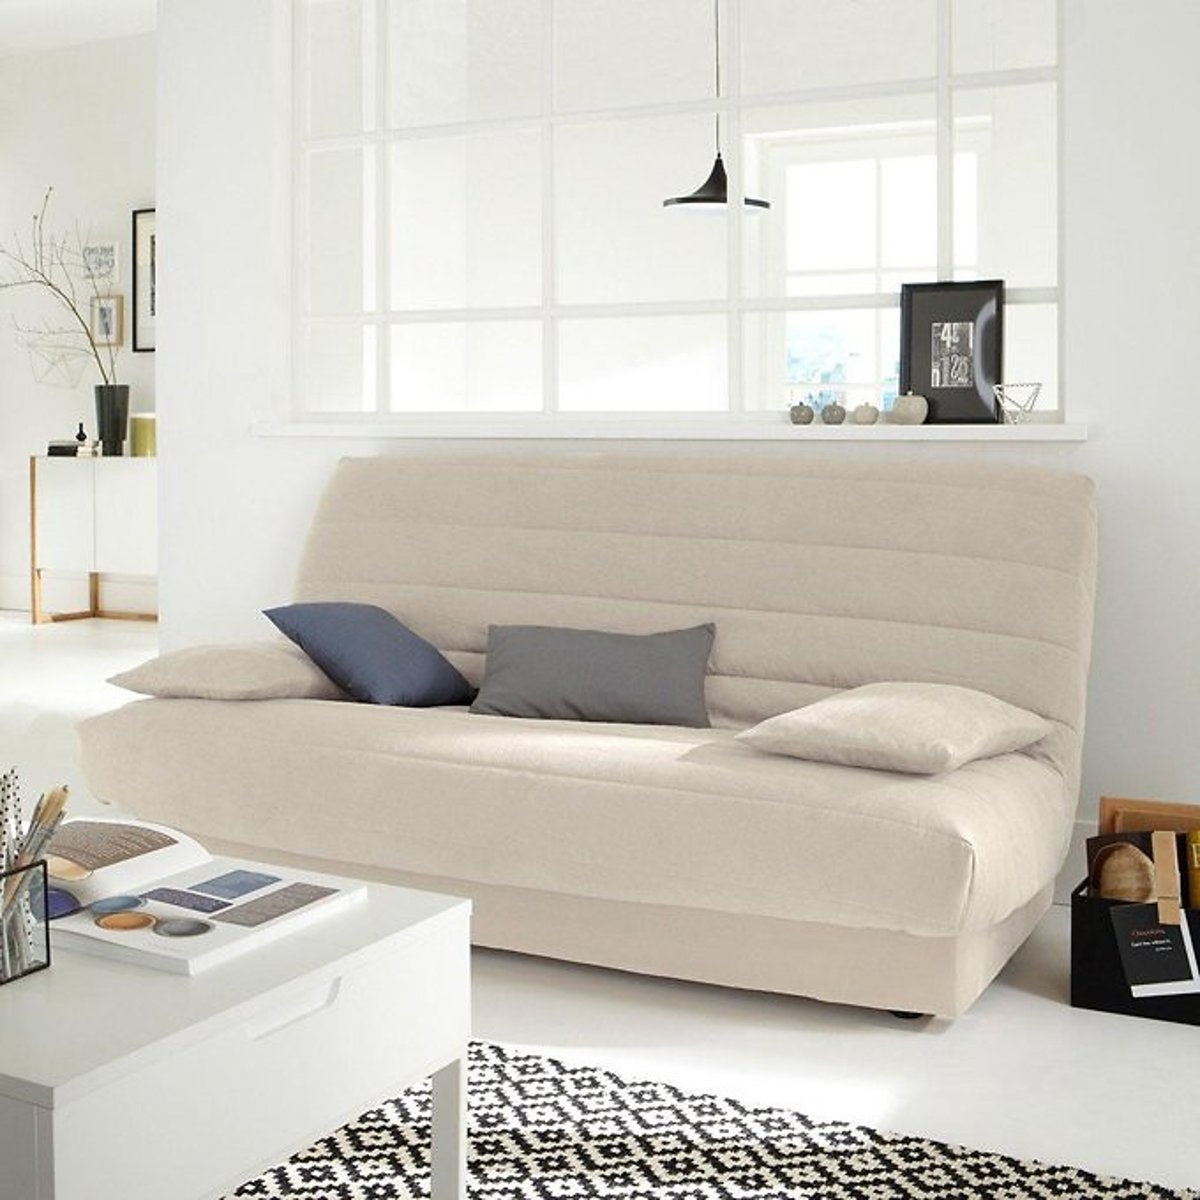 Чехол La Redoute Для основания раскладного дивана из искусственной замши единый размер бежевый - фото 1